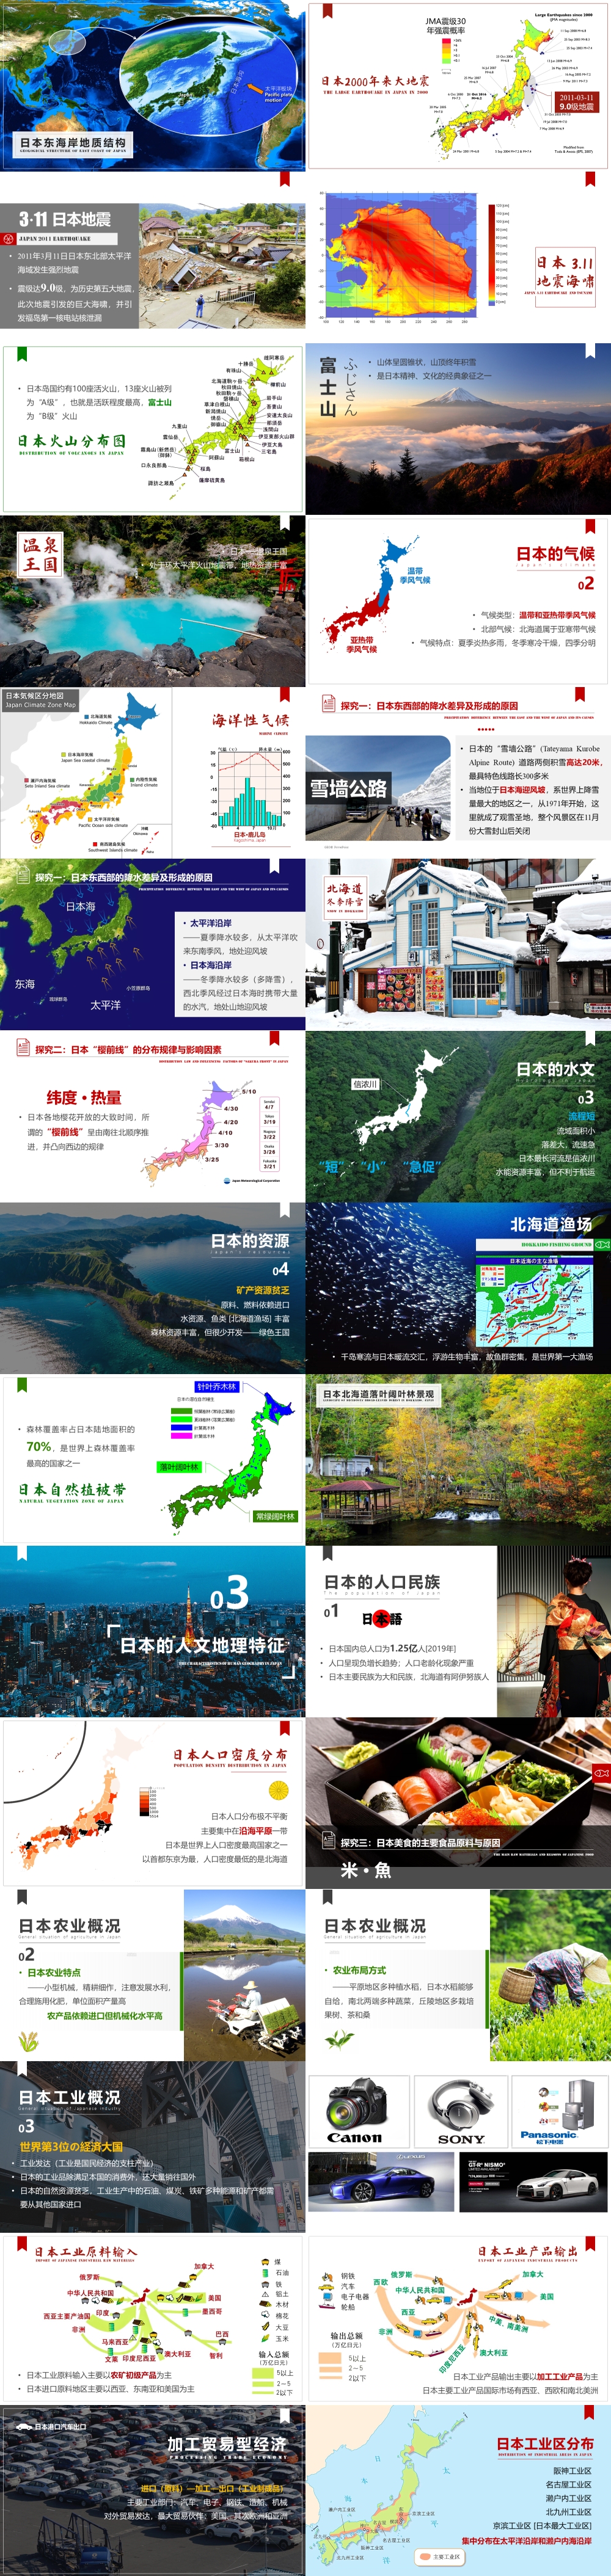 世界地理 第06讲 东亚与日本 East-Asia Japan  [2020版]-1000px-01.jpg